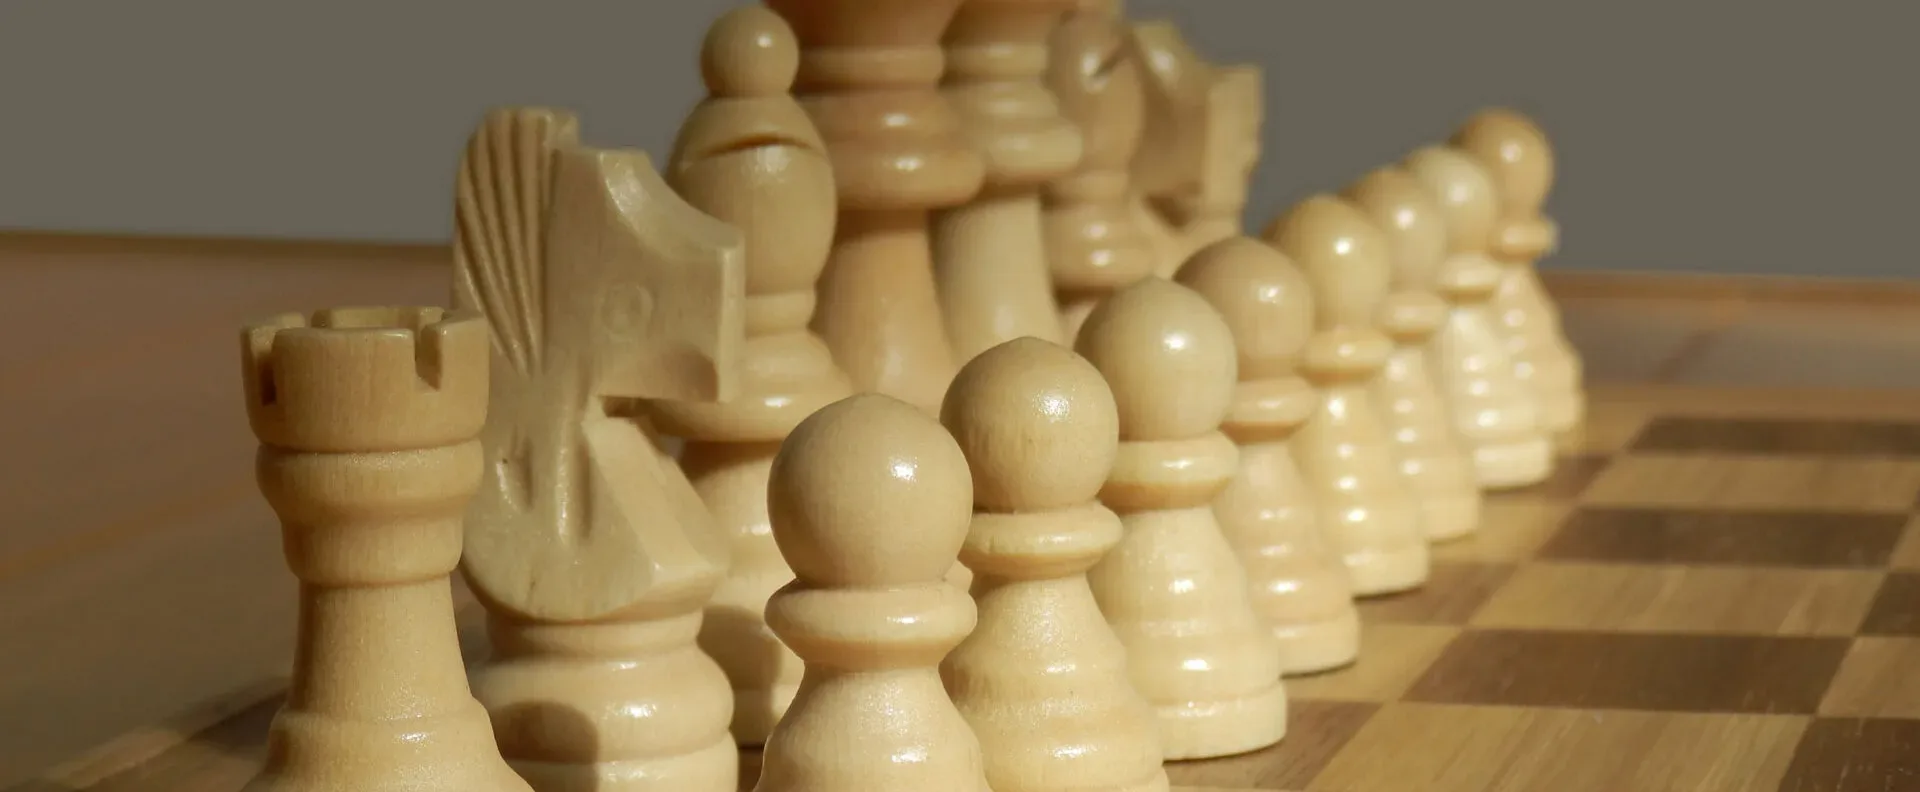 Ver categoría de ajedrez magnético plegable de madera